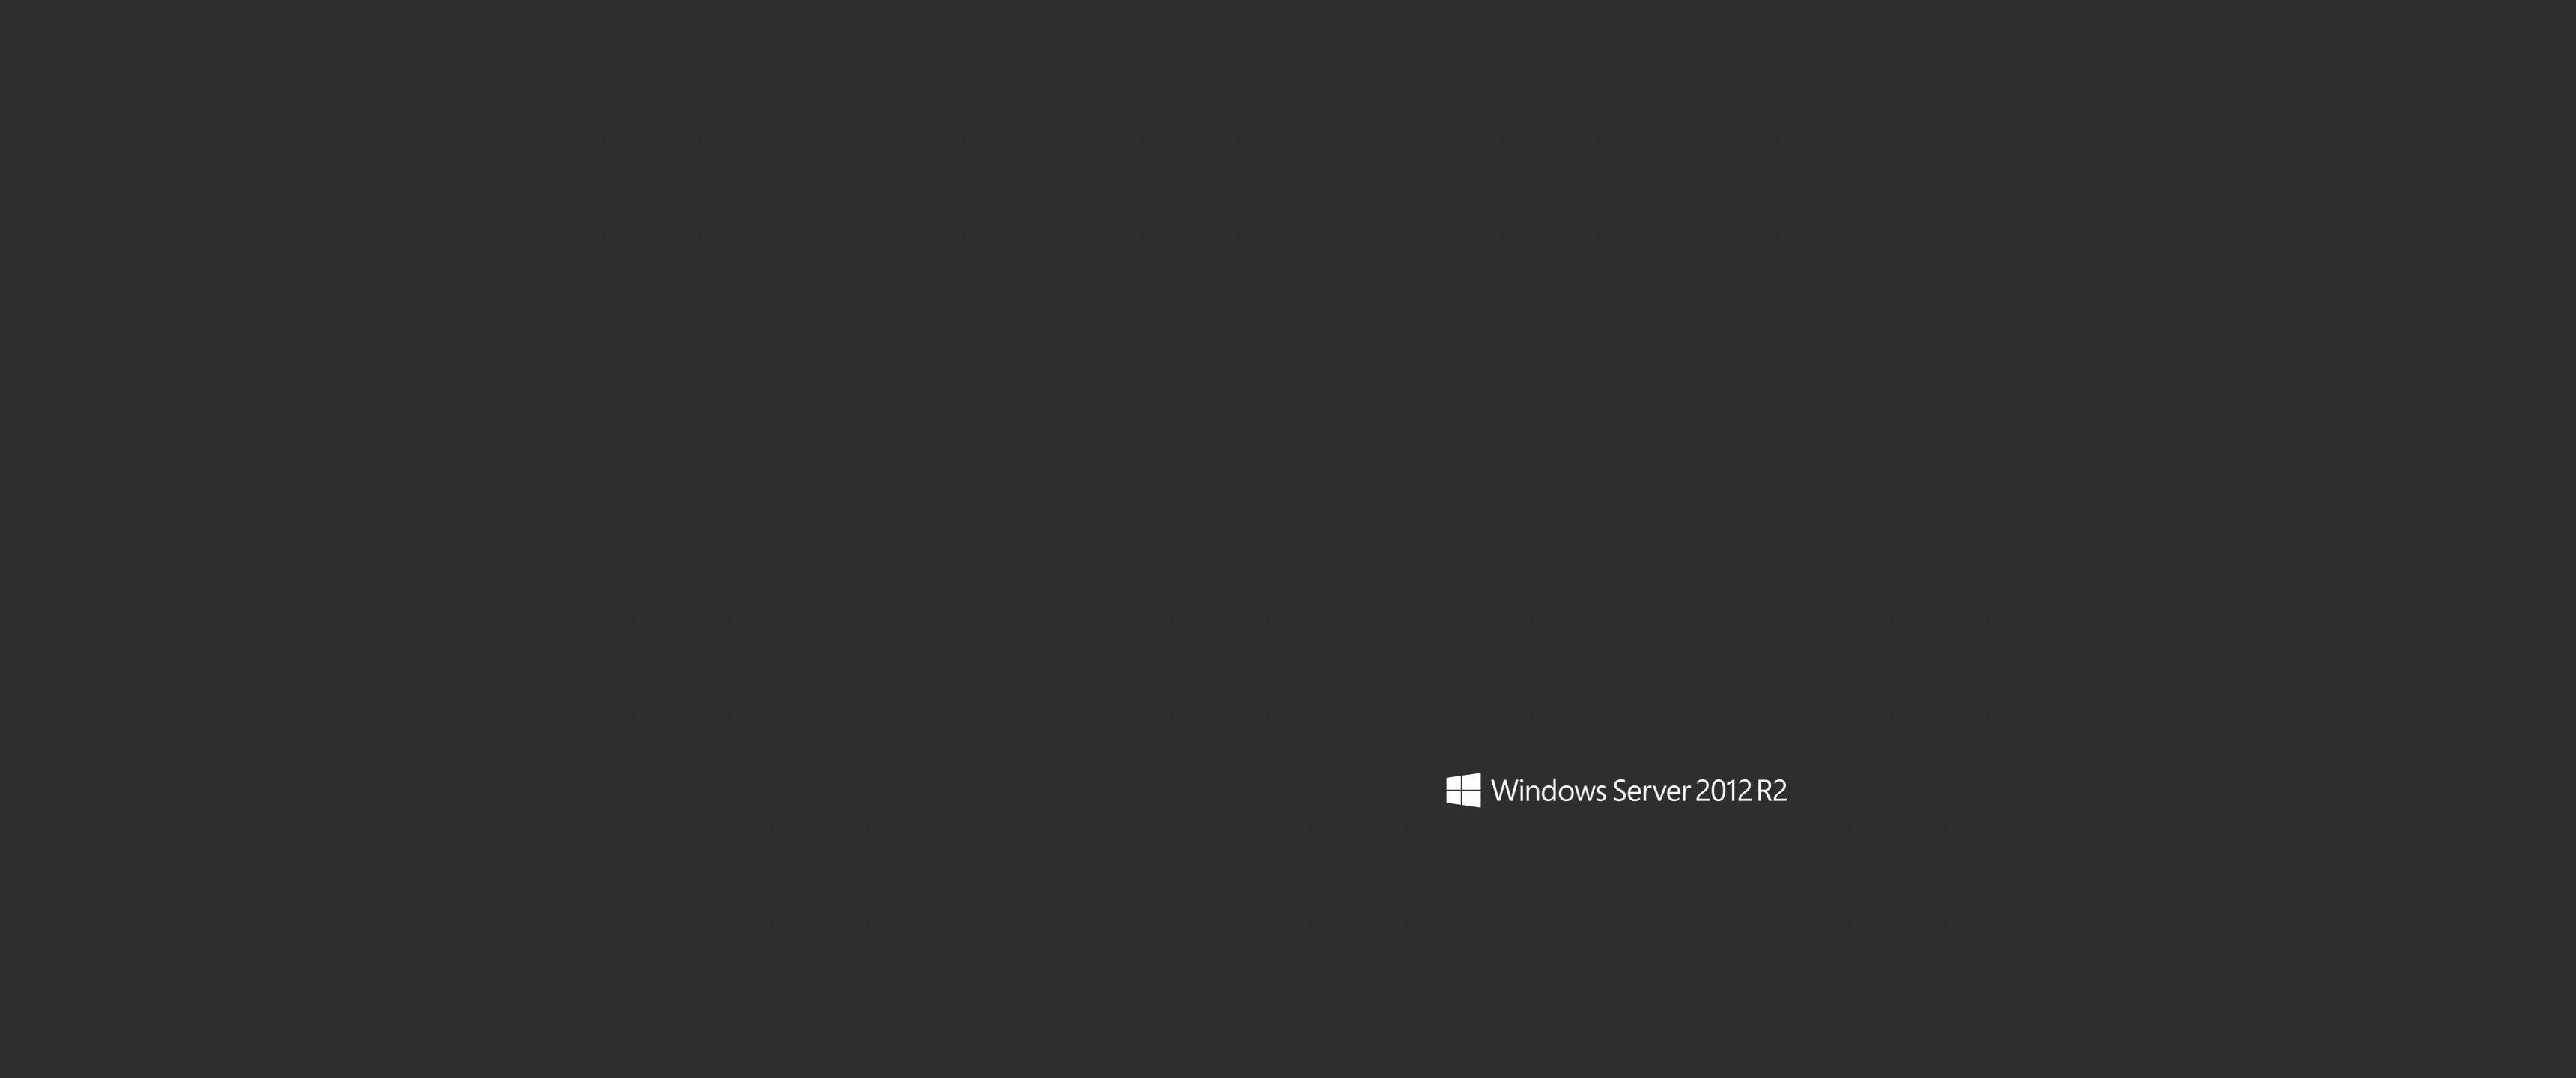 Những hình nền độc đáo và đẹp mắt của Windows Server 2012 chắc chắn sẽ khiến bạn say đắm với màn hình máy tính của mình. Hãy trải nghiệm ngay những hình ảnh tuyệt vời này ngay hôm nay!